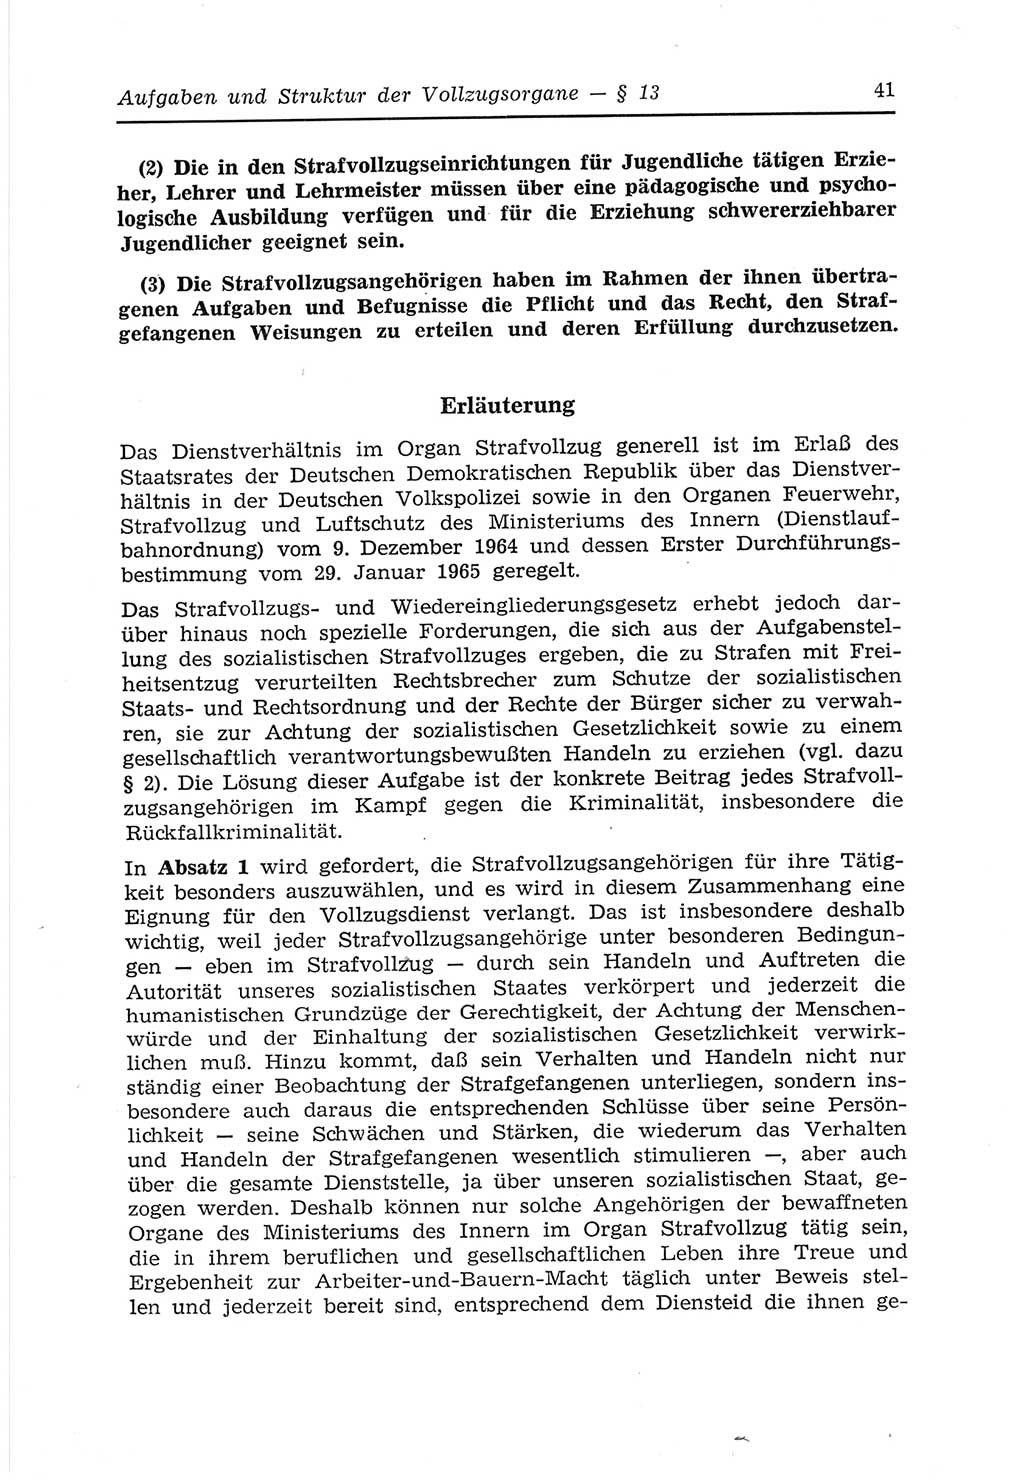 Strafvollzugs- und Wiedereingliederungsgesetz (SVWG) der Deutschen Demokratischen Republik (DDR) 1968, Seite 41 (SVWG DDR 1968, S. 41)